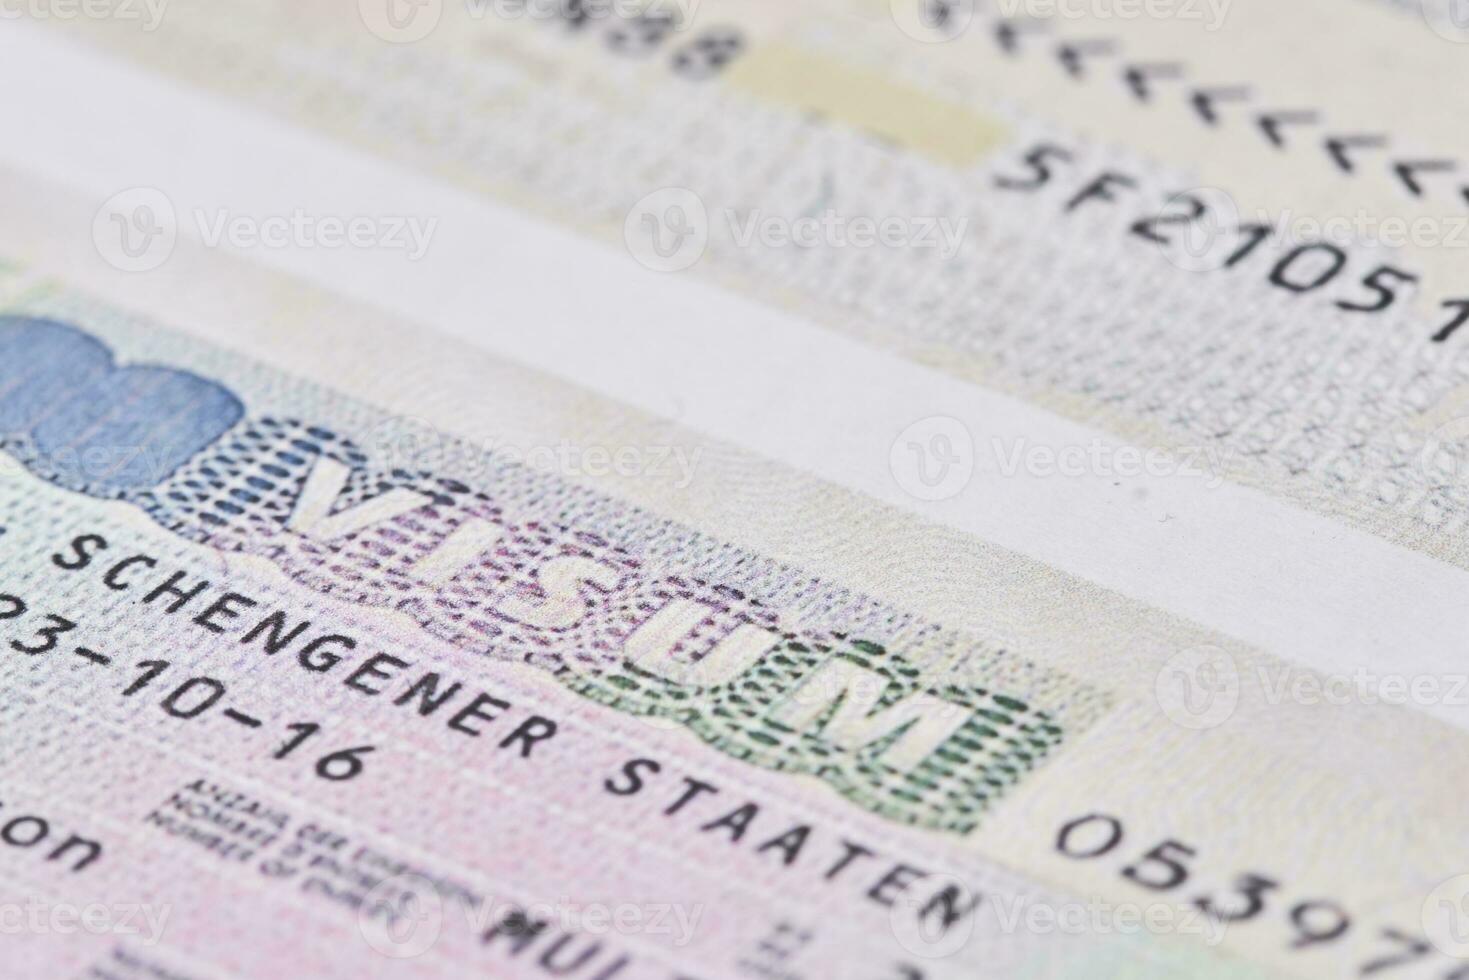 Schengen visa in passport. Close-up photo